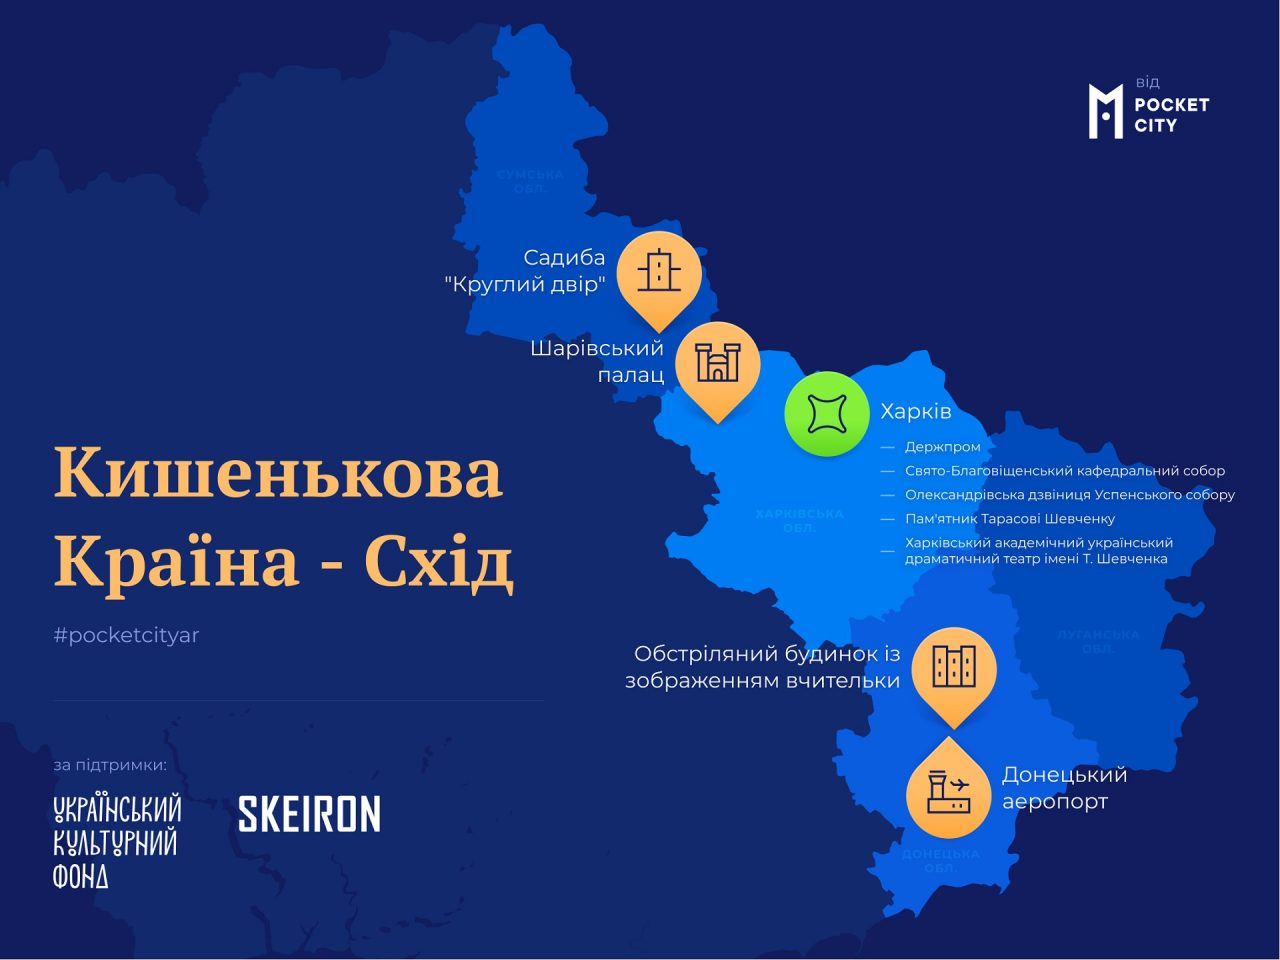 Кишенькова країна — експедиція з 3D-оцифрування культурної спадщини України